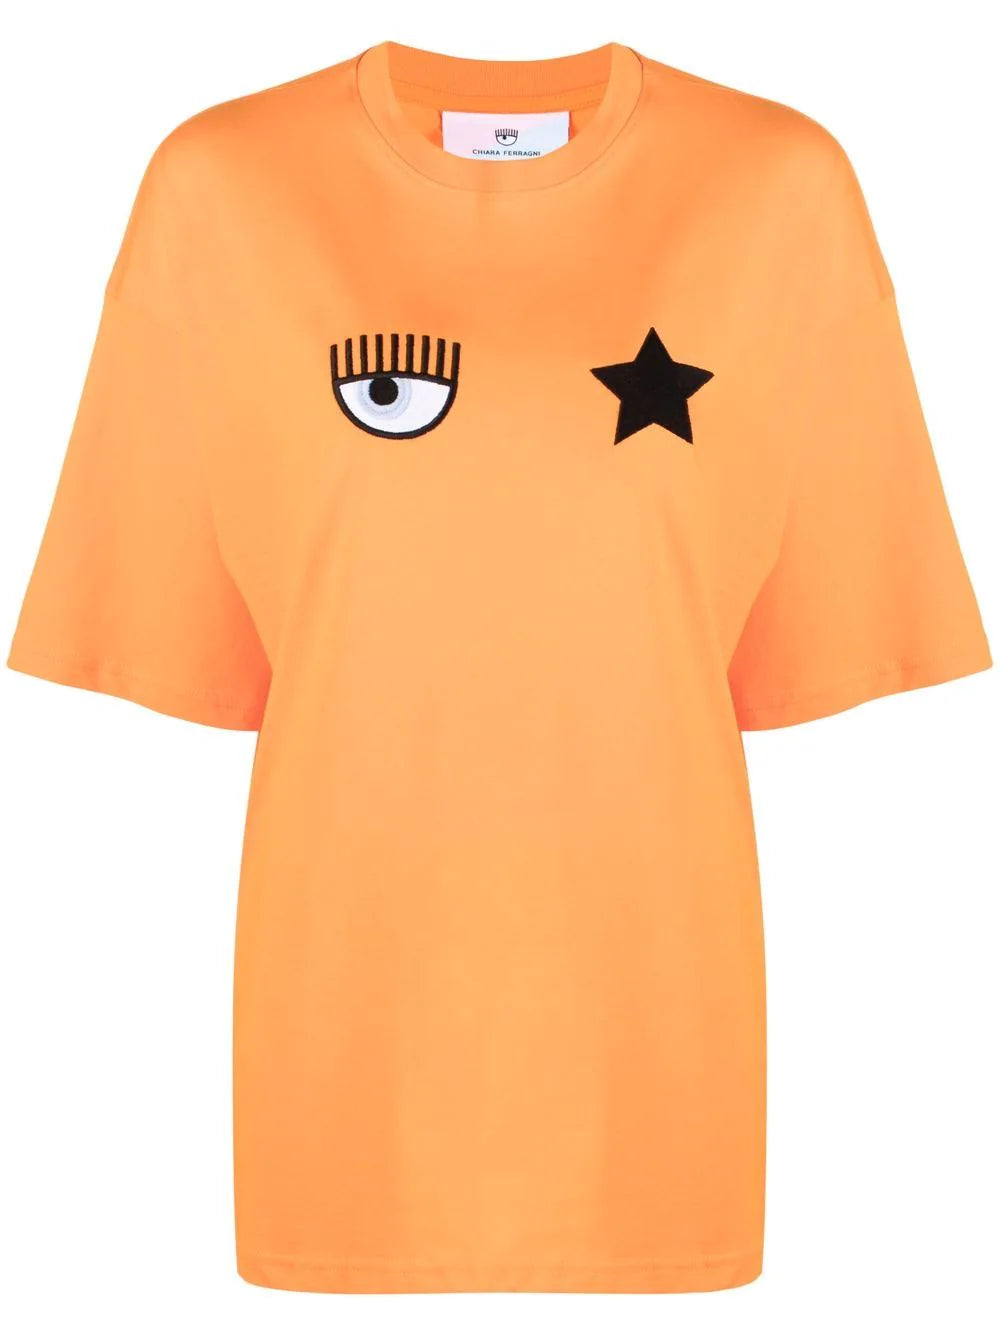 T-Shirt Chiara Ferragni con Stampa / Arancione - Ideal Moda